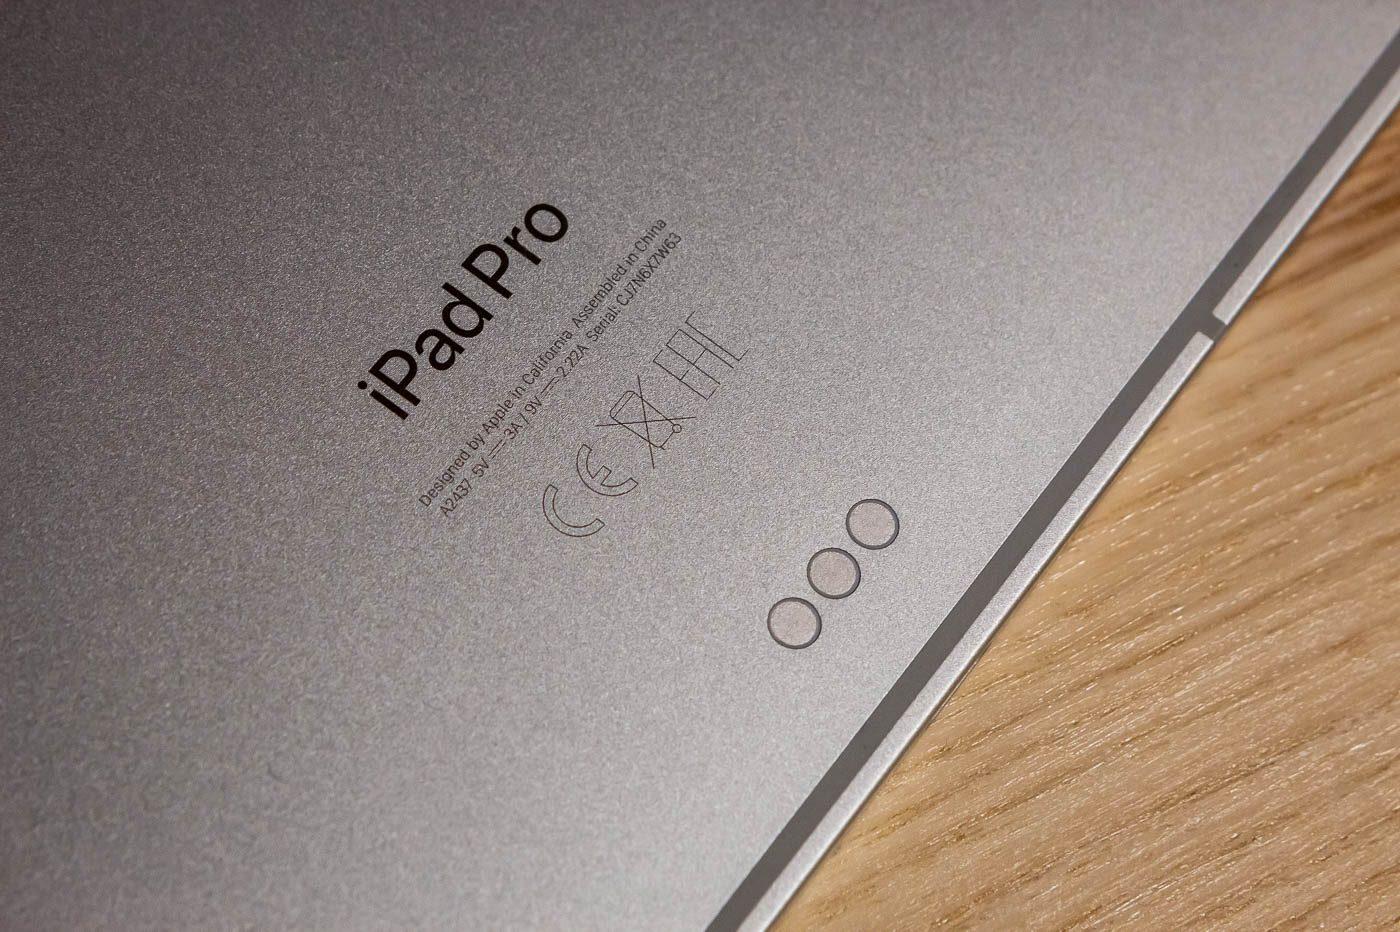 Apple : le point sur les nouveaux iPad qui viennent de sortir